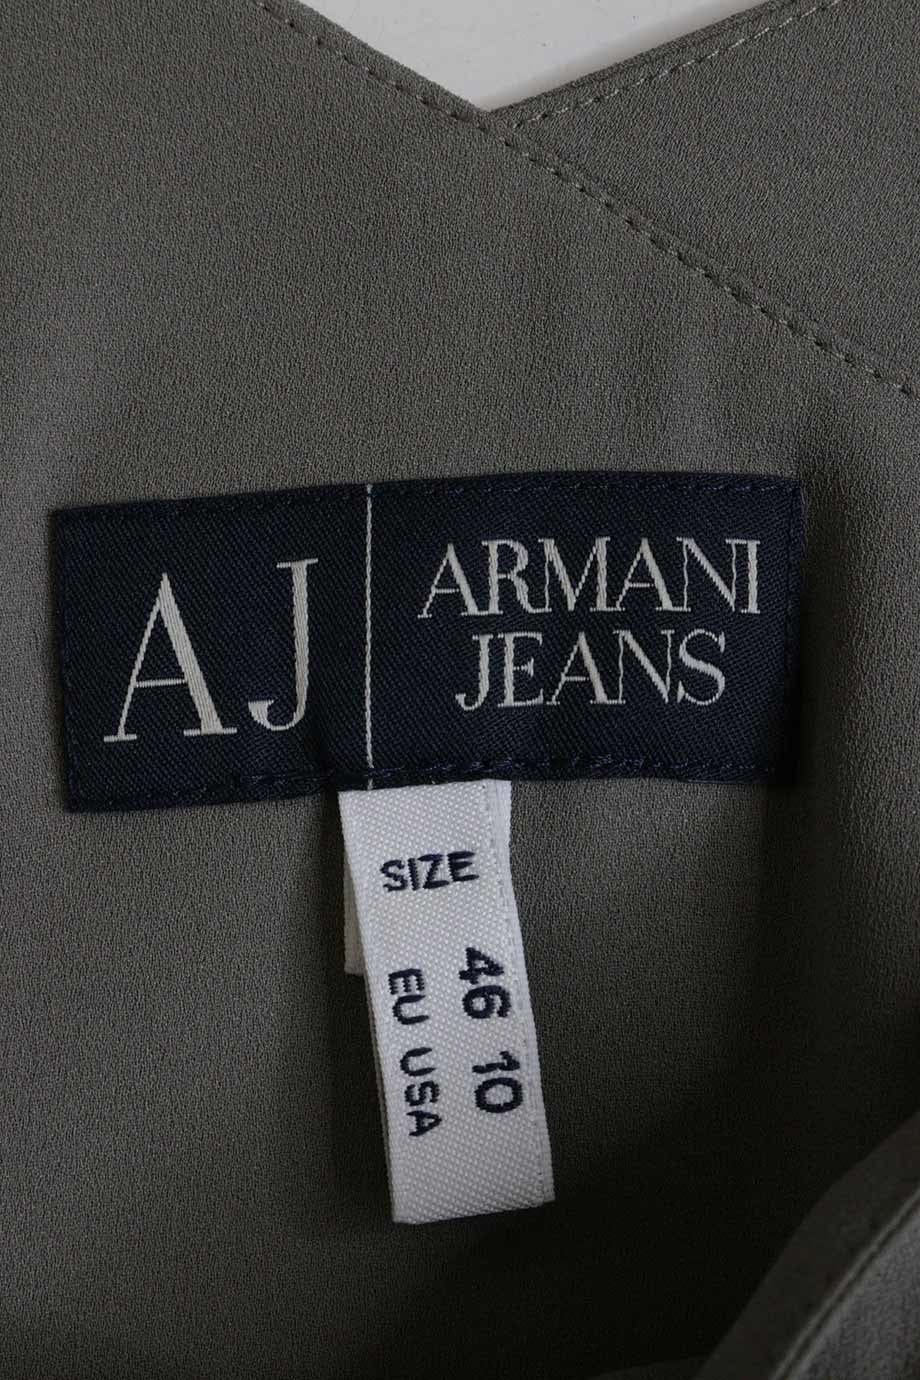 u3173_ww23522_armani_jeans_3.jpg